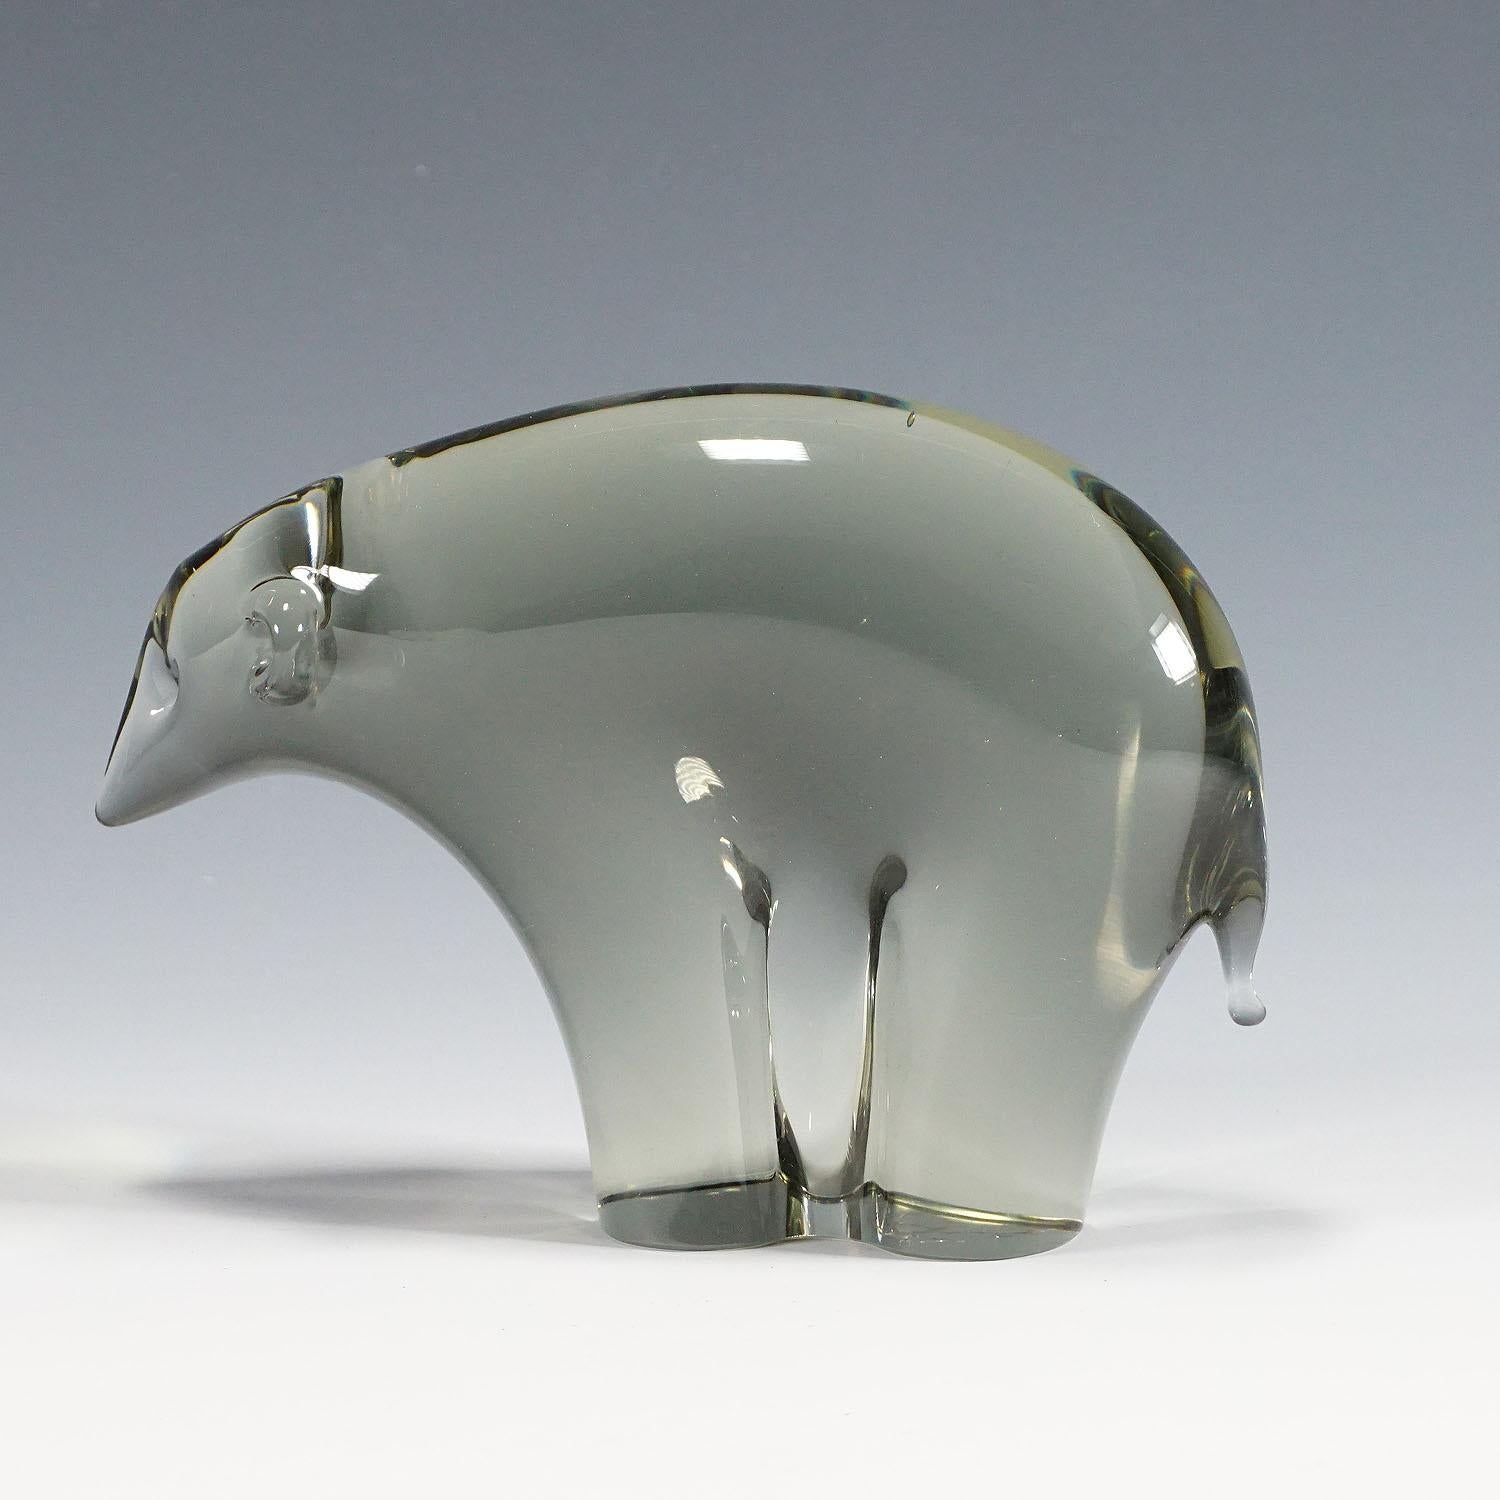 Escultura de un oso de hielo estilizado en cristal gris humo. Hand Made en la fábrica de Gral Glass, Alemania. Diseñado por Livio Seguso hacia 1970. Base con firma incisa del artista (LS).

Lit.: gralglas informationen 8, hoja de la fábrica hacia